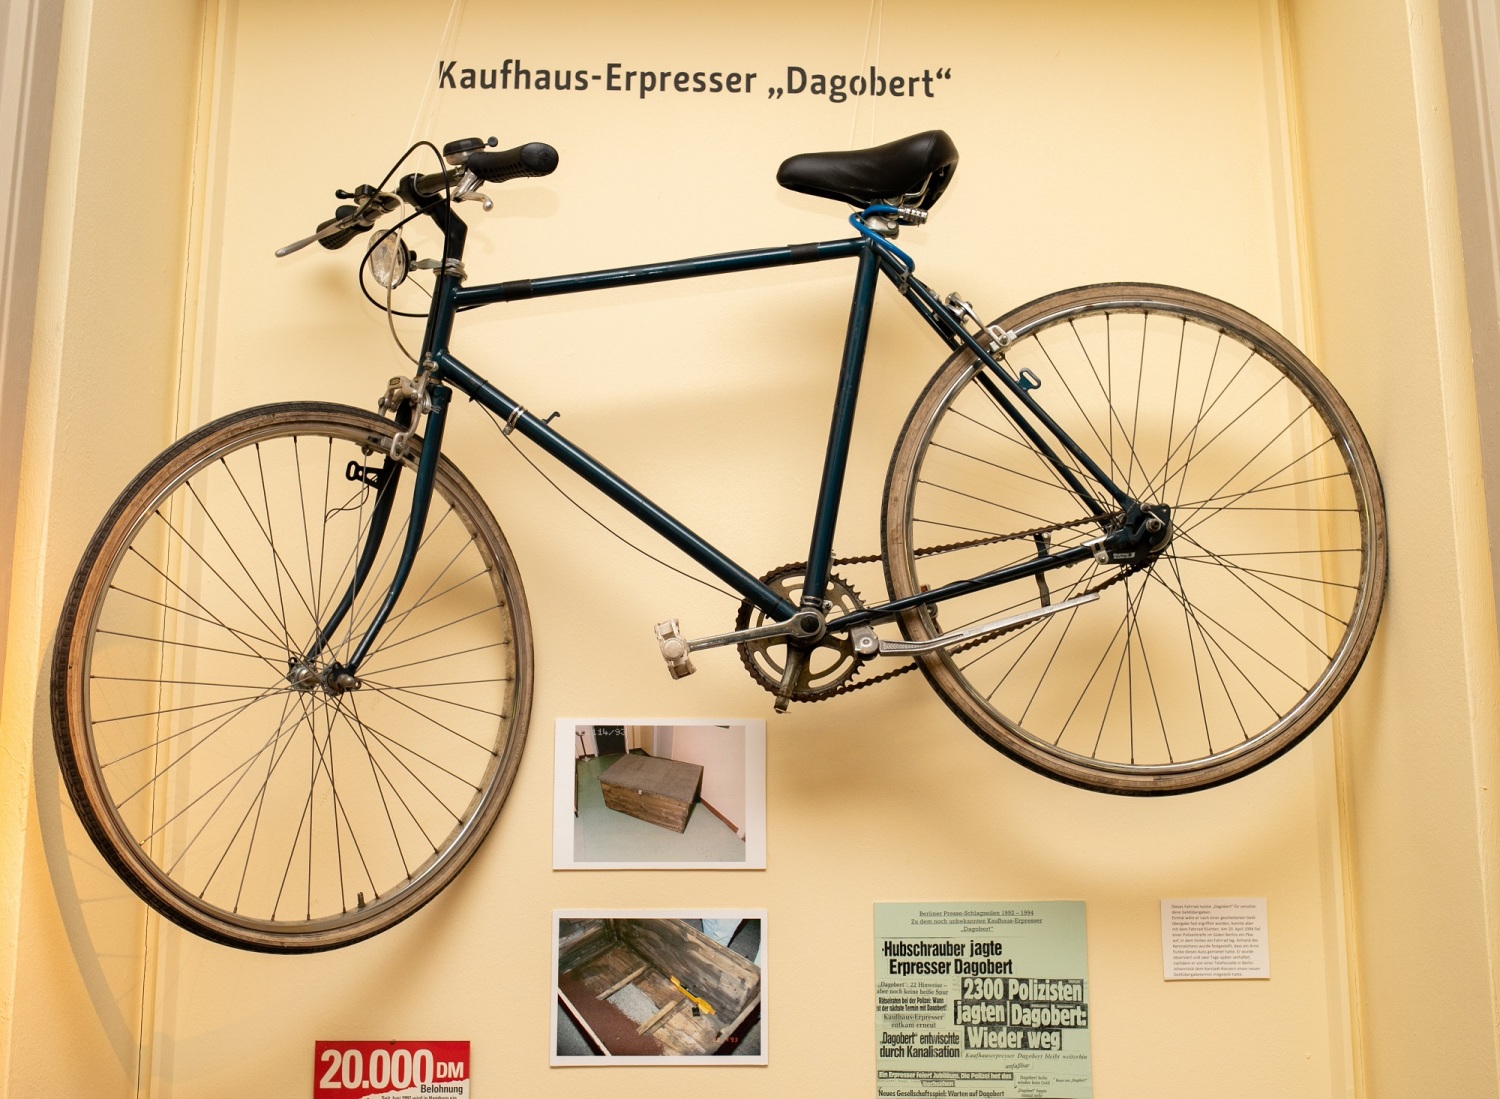 Fahrrad des Kaufhaus-Erpressers "Dagobert"